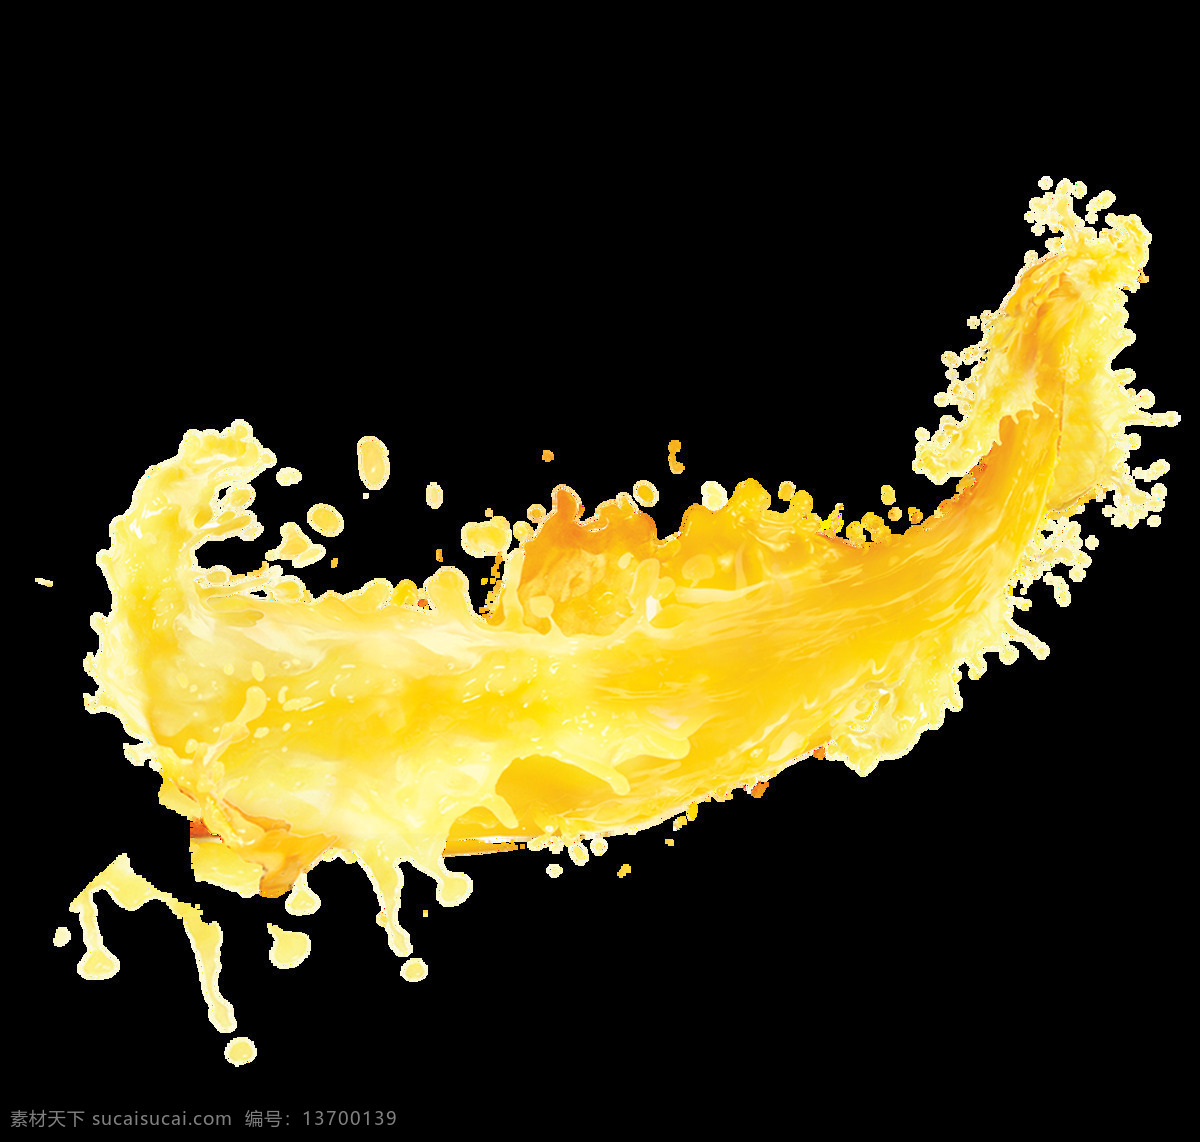 秋日 水墨 黄色 果汁 透明 卡通 抠图专用 设计素材 装饰